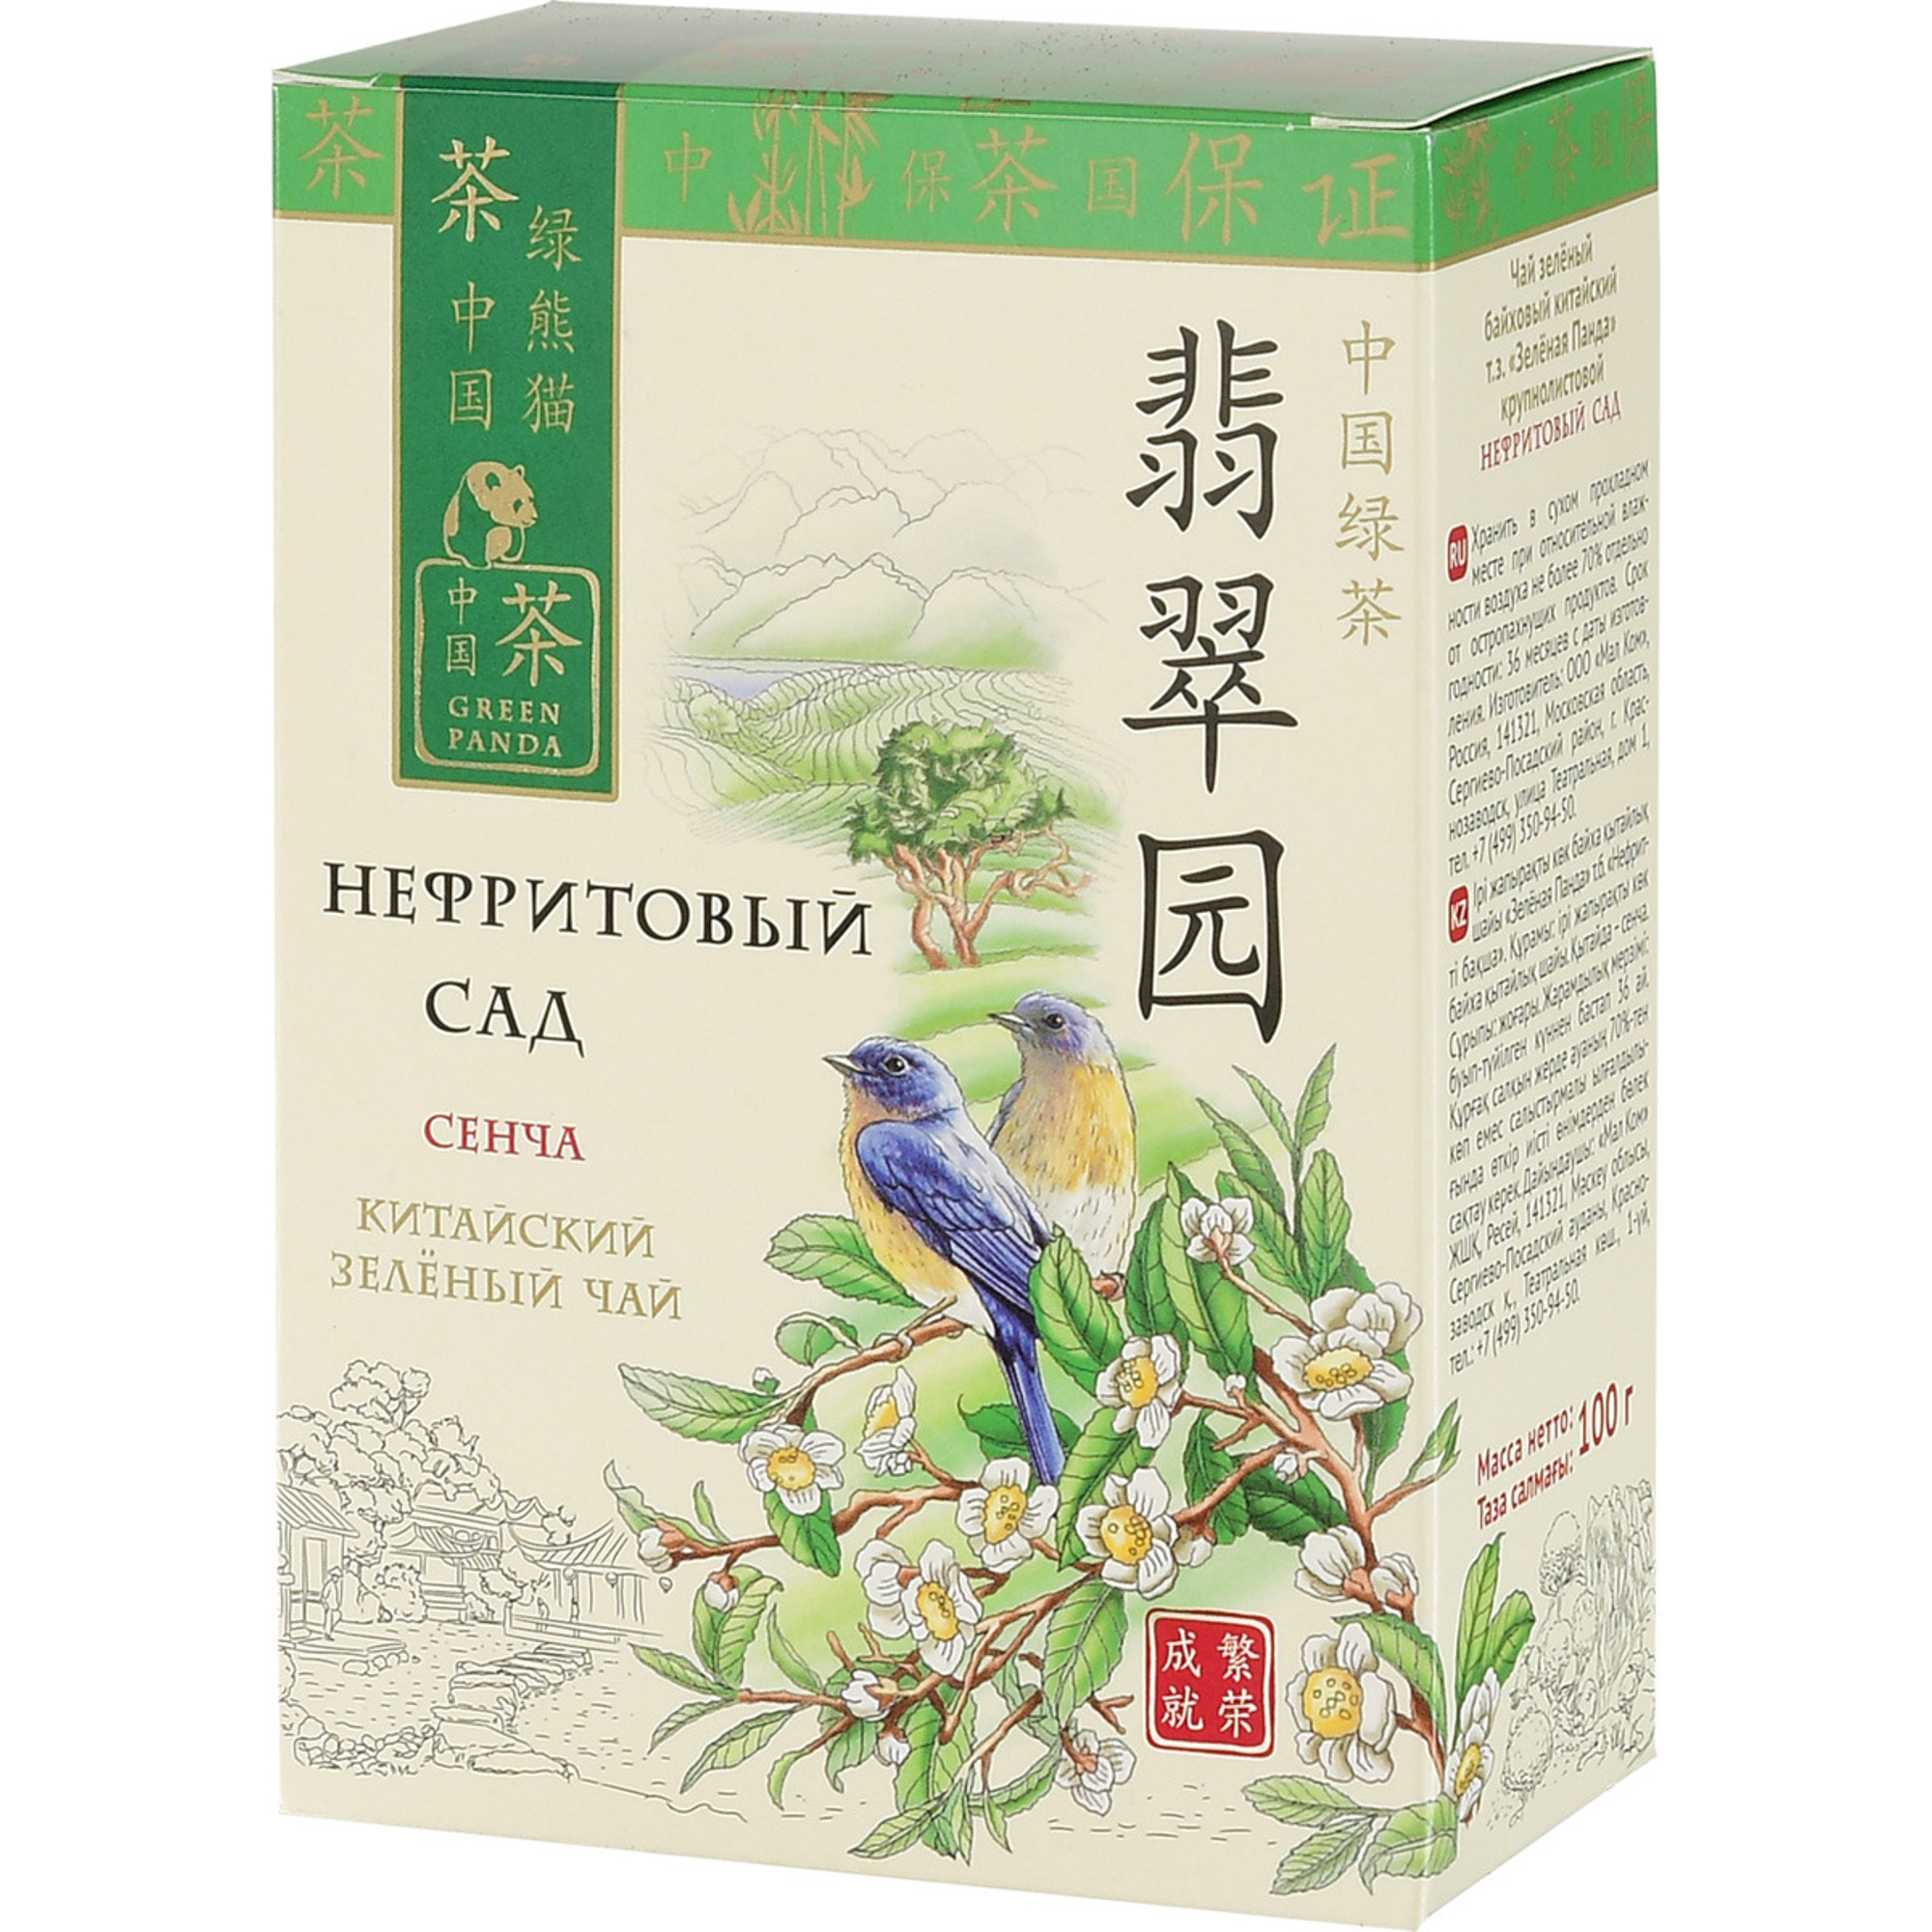 Чай зеленый Зеленая Панда Нефритовый сад Сенча листовой 100 г чай зеленый зеленая панда классический 100 г